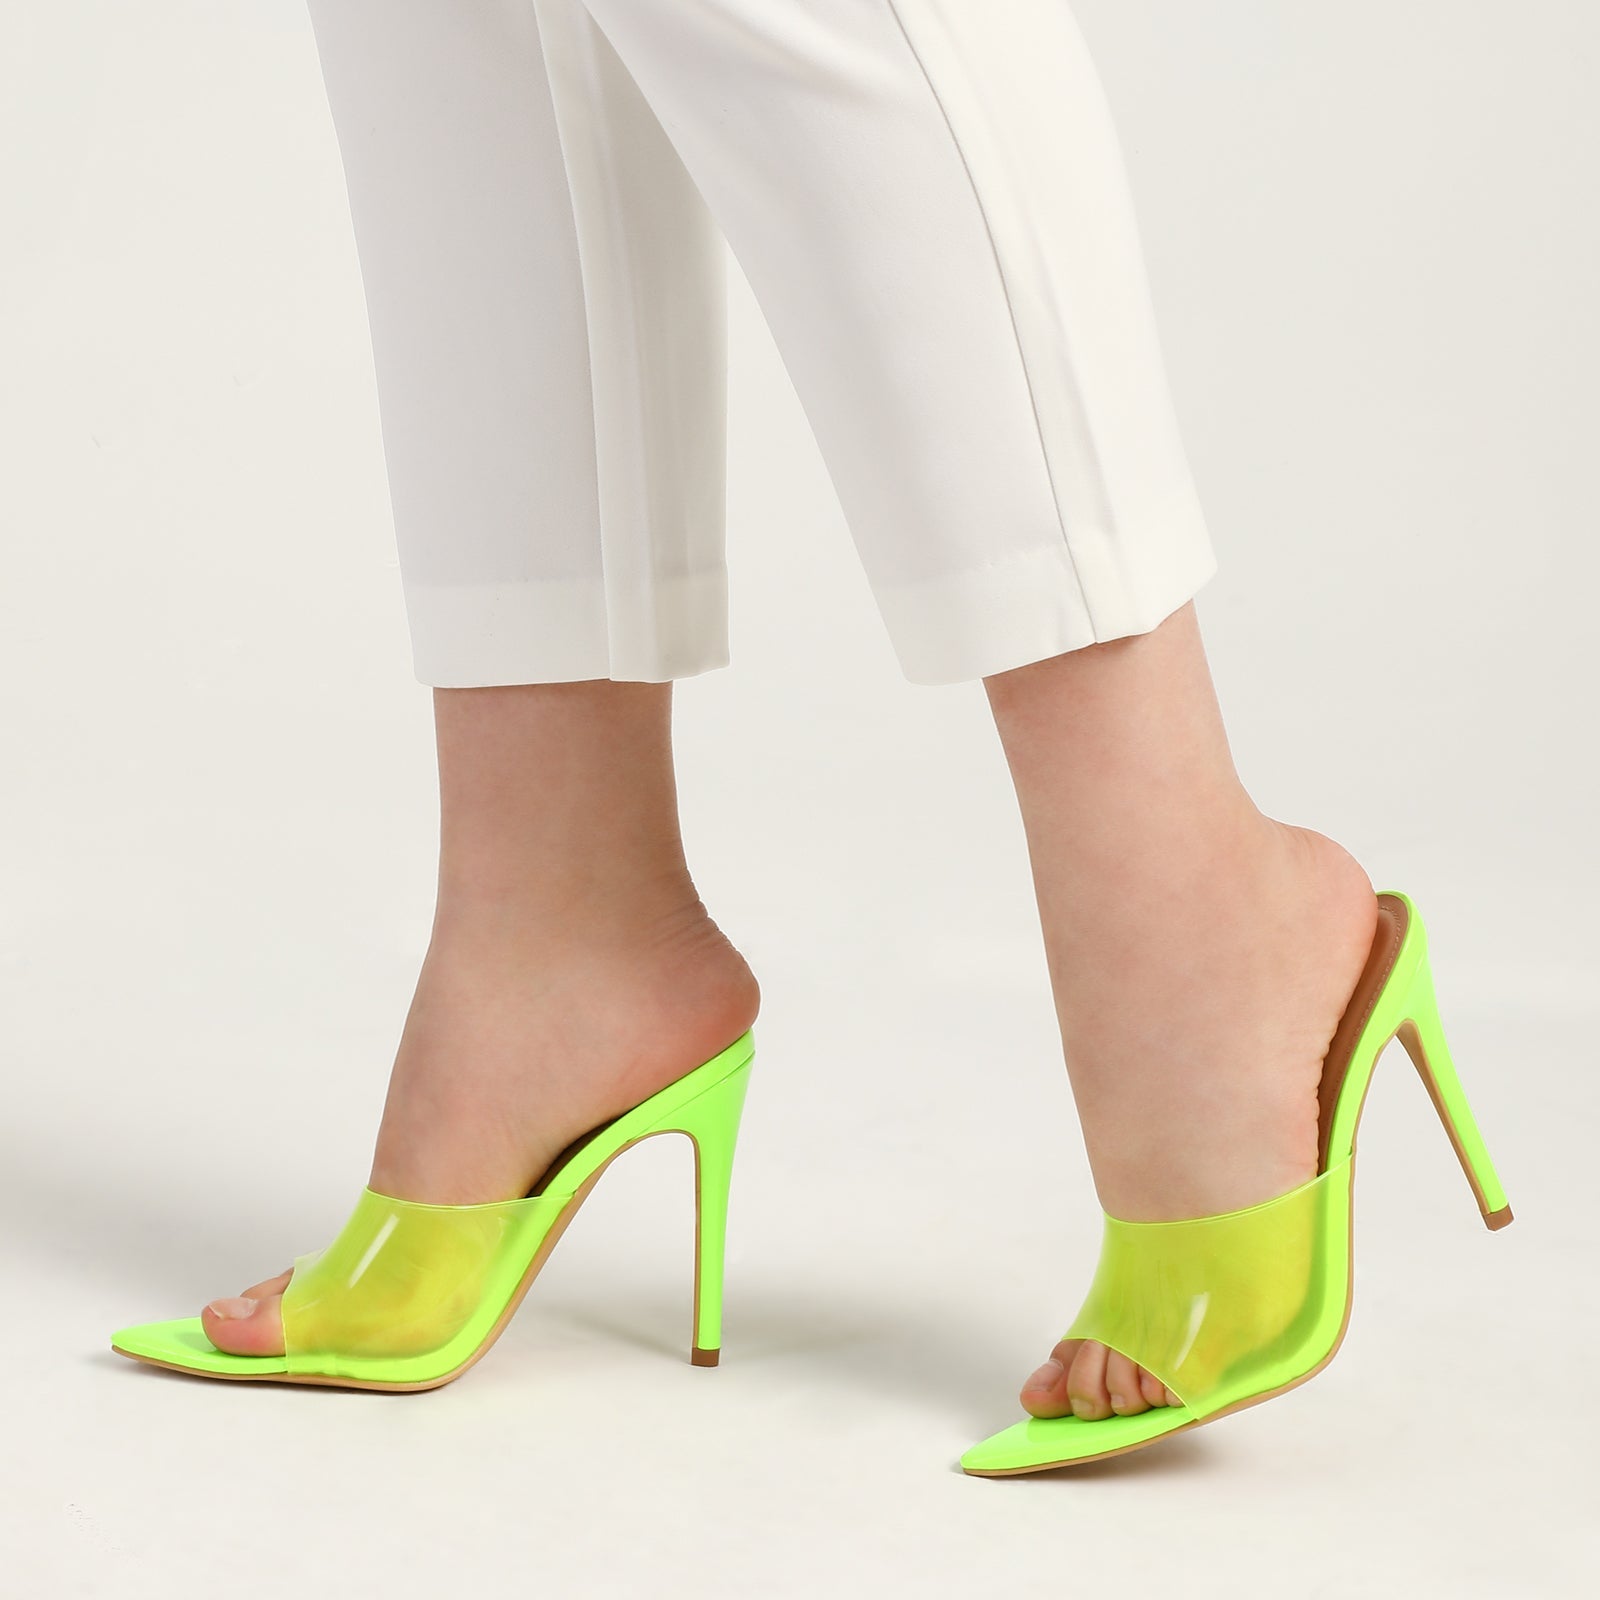 Clear Heels - PVC Heels - Ankle Strap Heels - Rhinestone Heels - Lulus